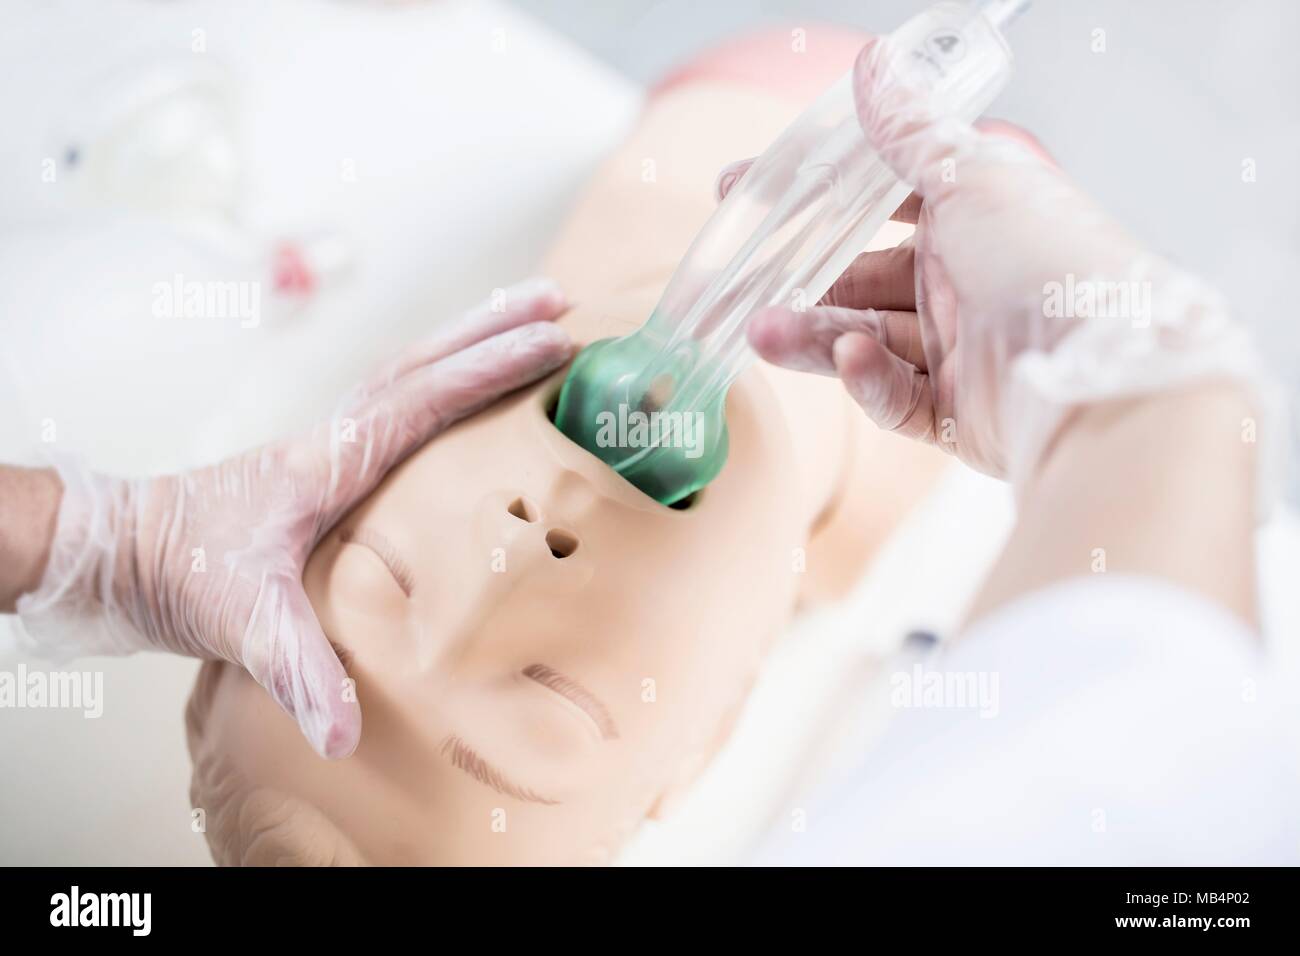 Medico esercitarsi intubazione tracheale su un manichino di formazione. Foto Stock